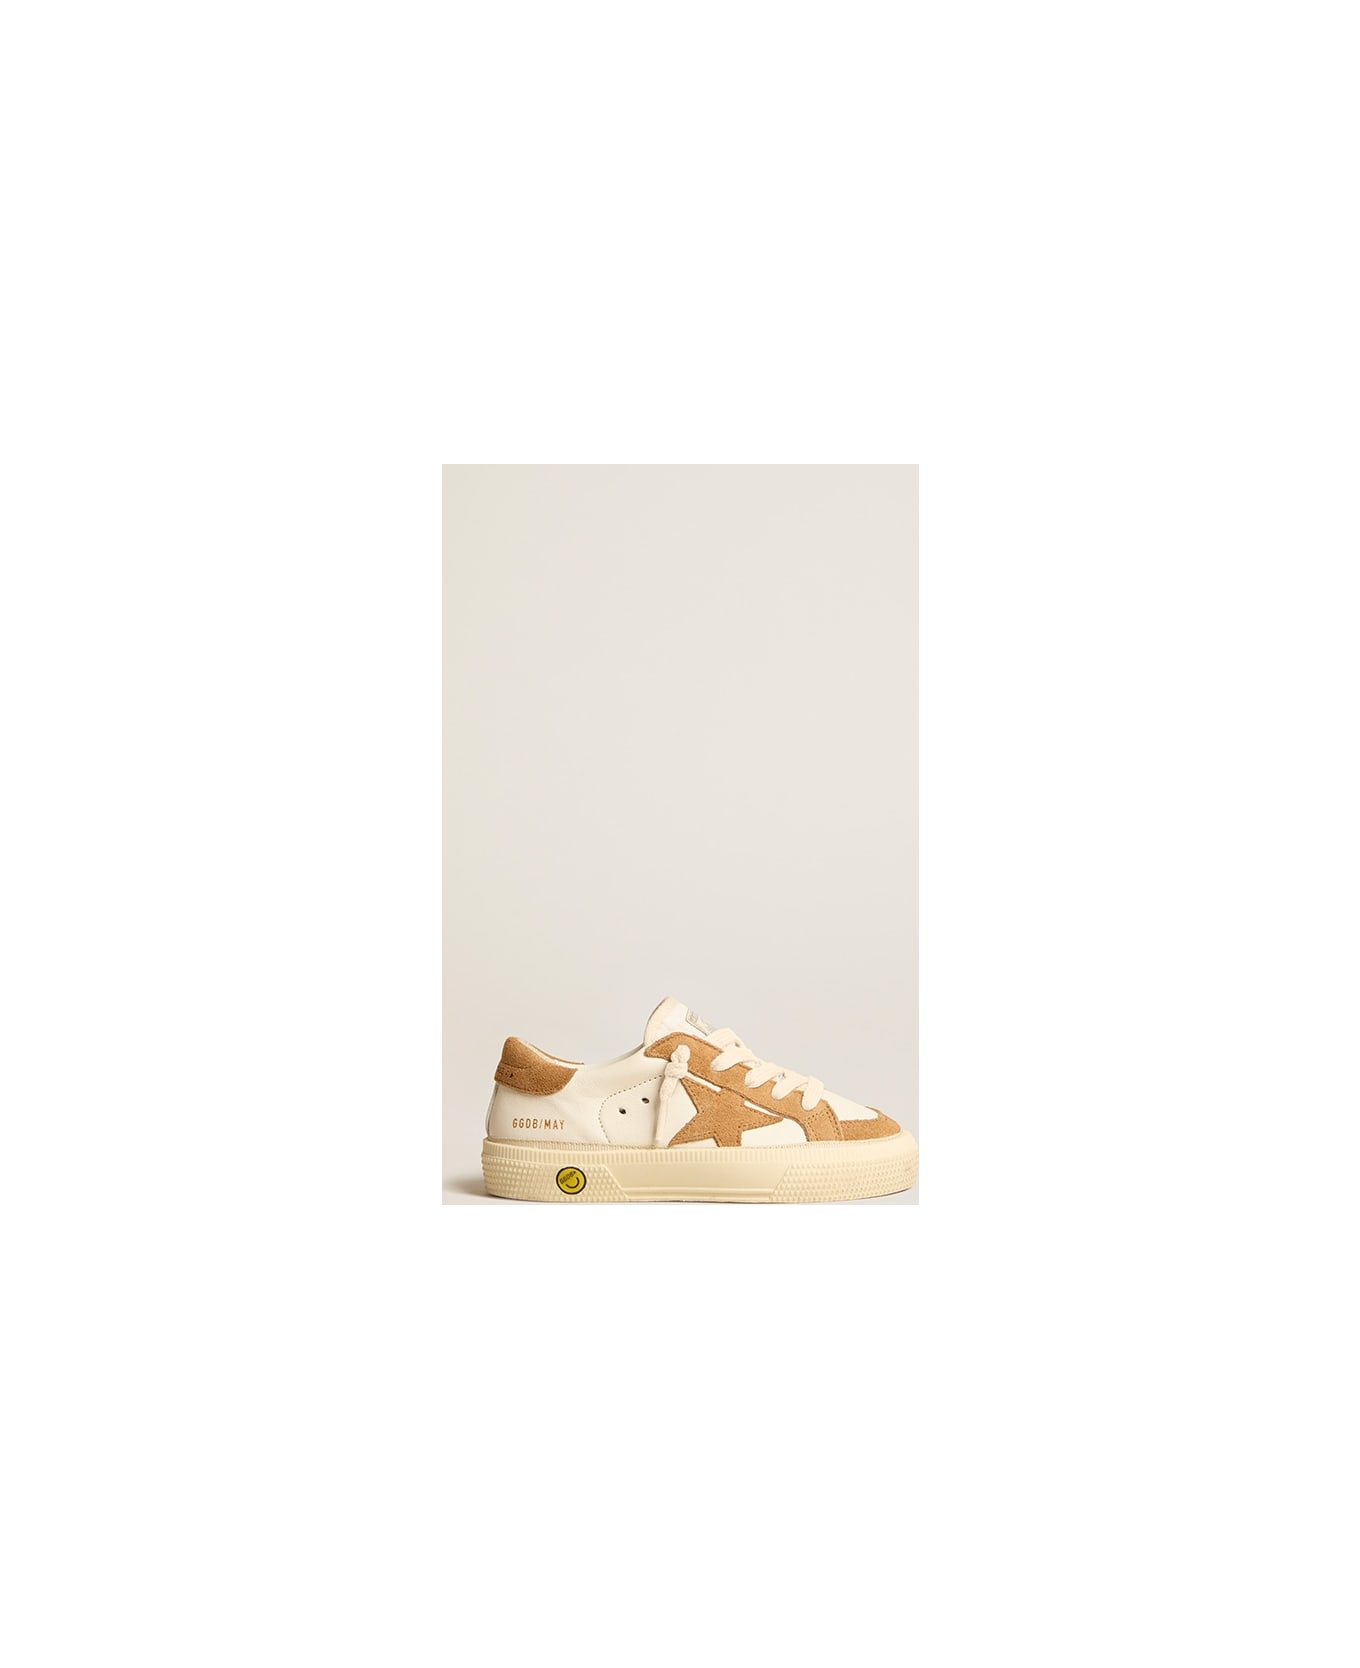 Golden Goose Sneakers May - Bianco/marrone シューズ